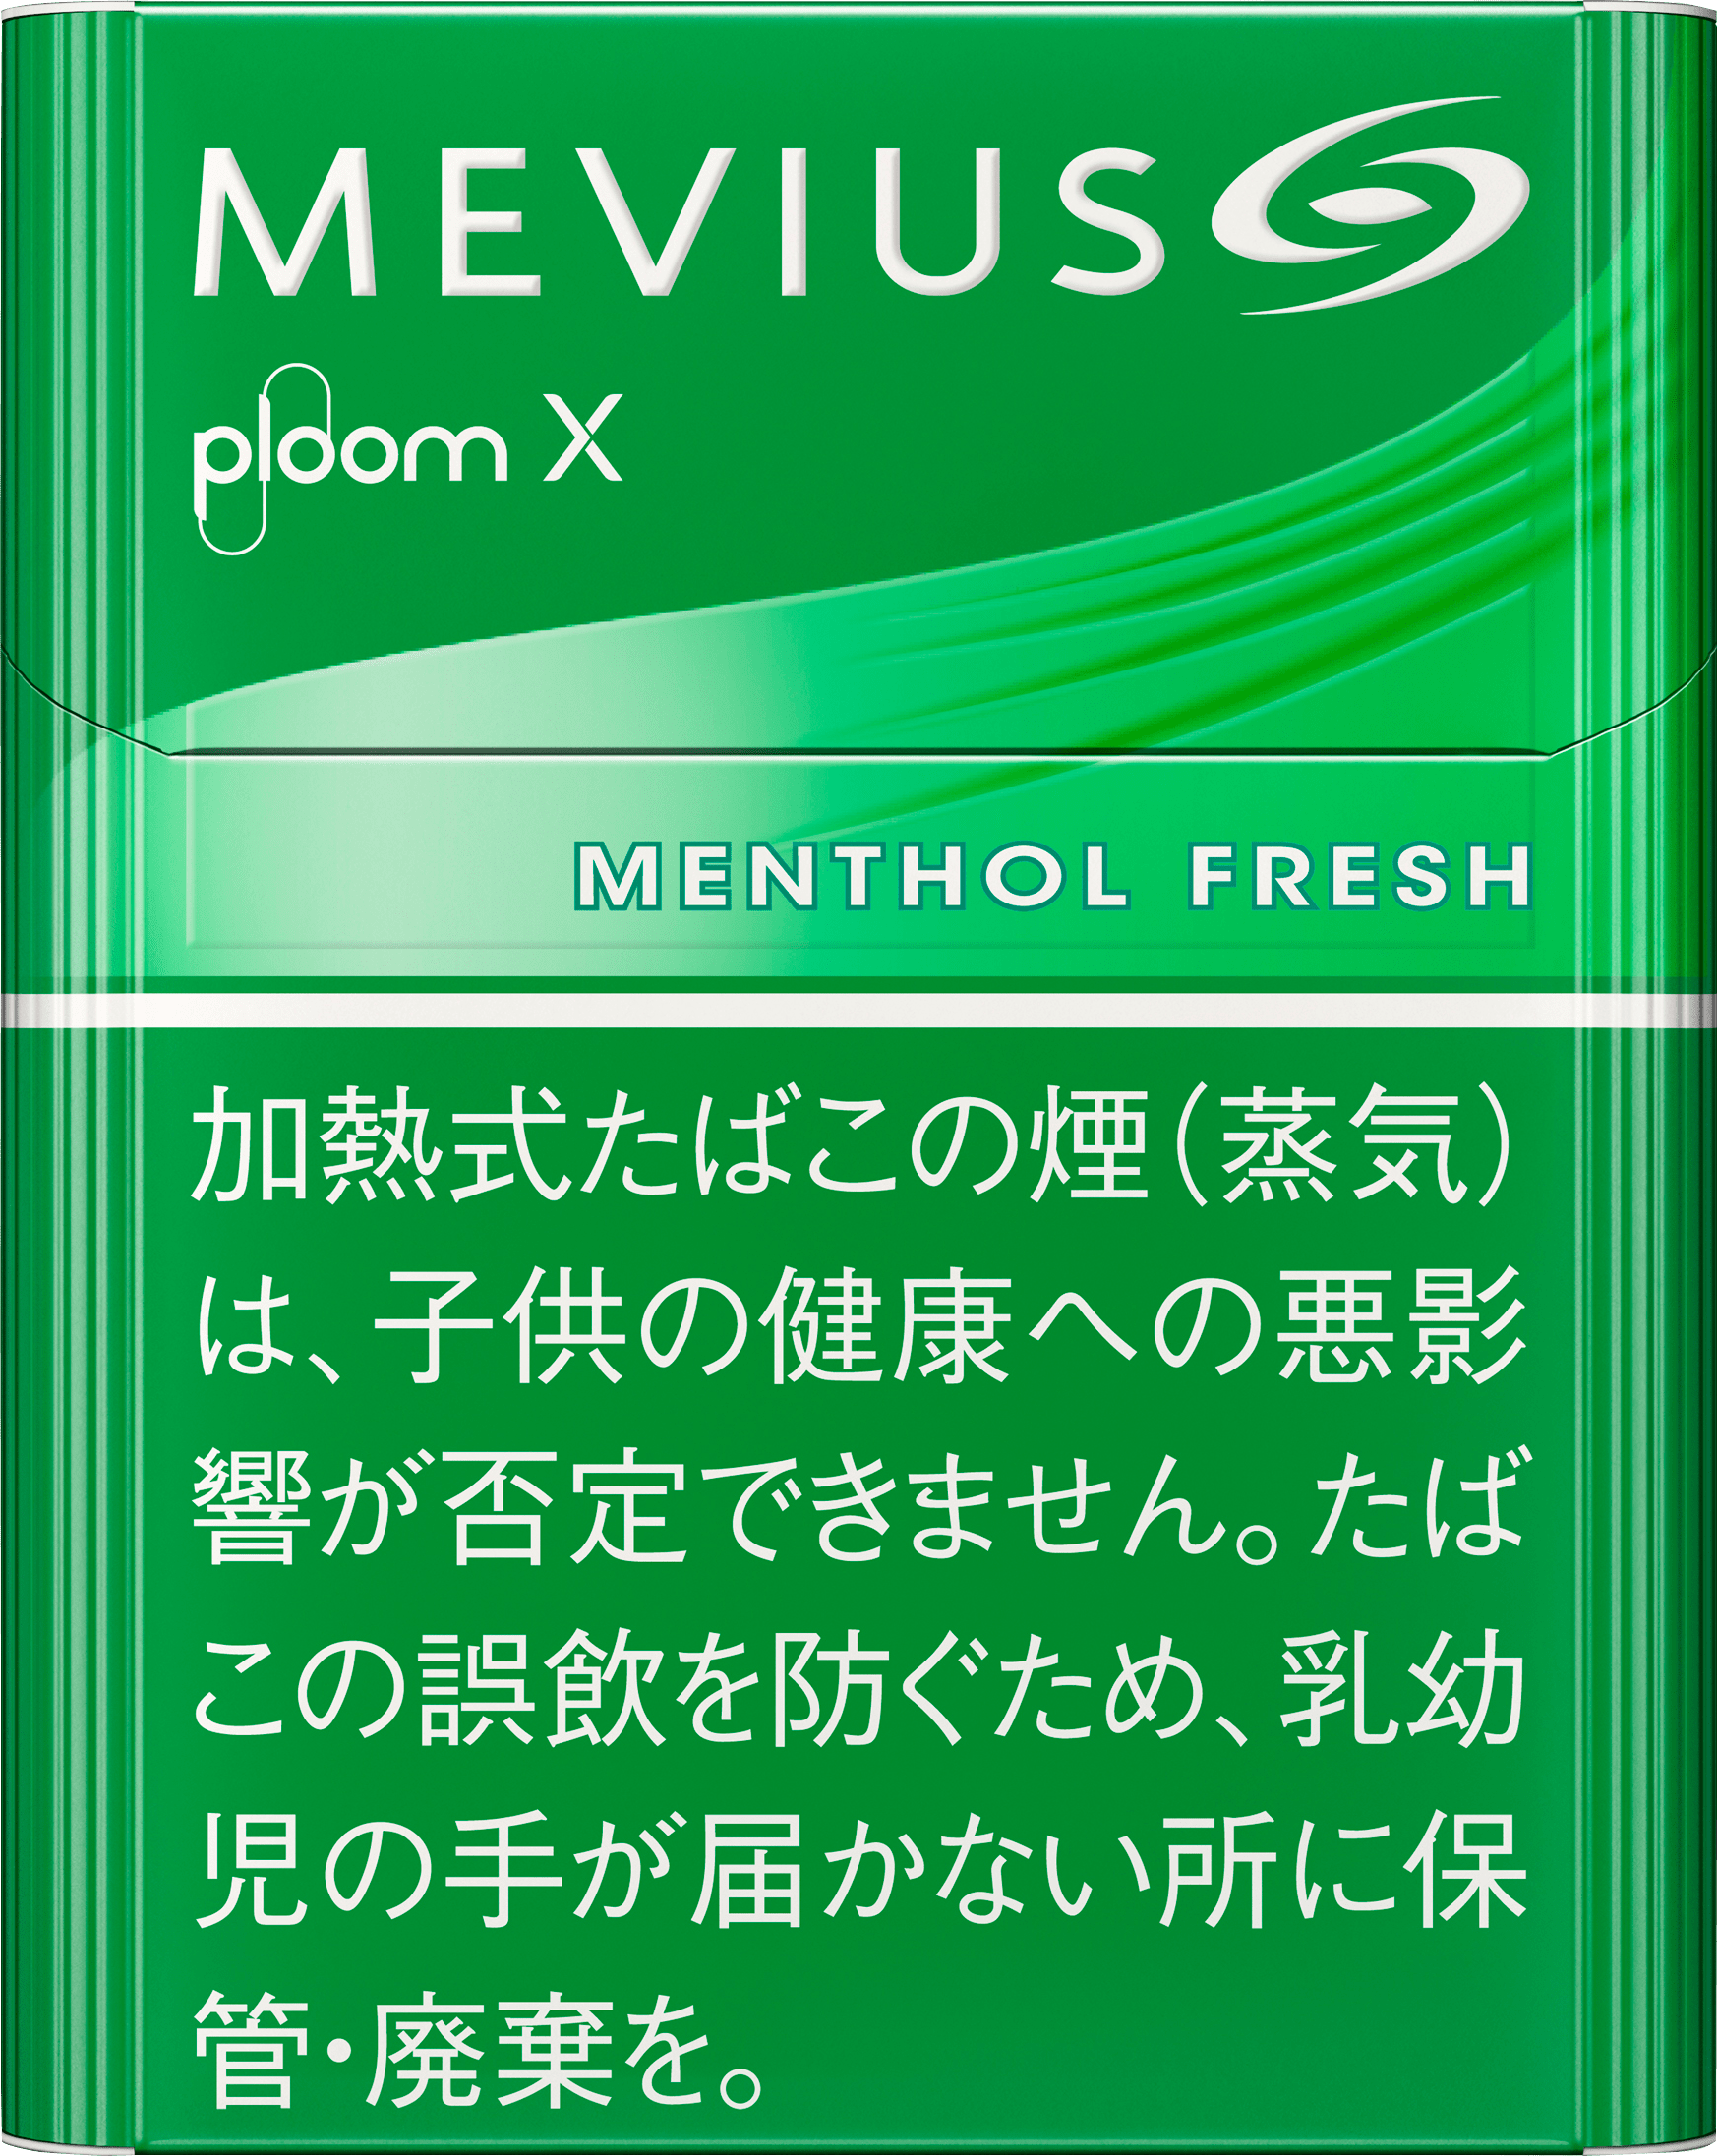 プルームXメビウス・メンソール・フレッシュ味フレーバー